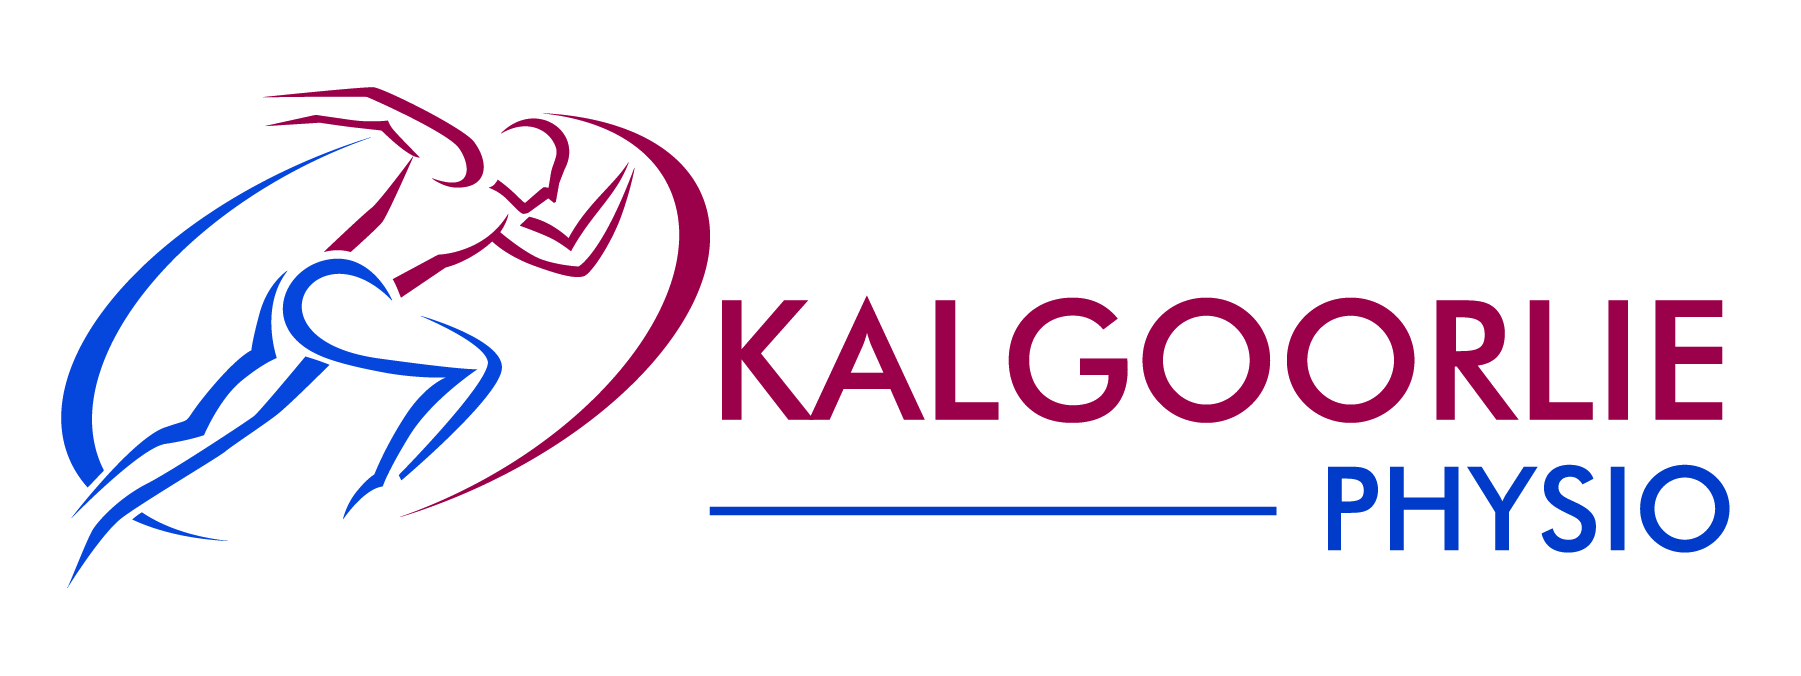 Kalgoorlie Physio logo